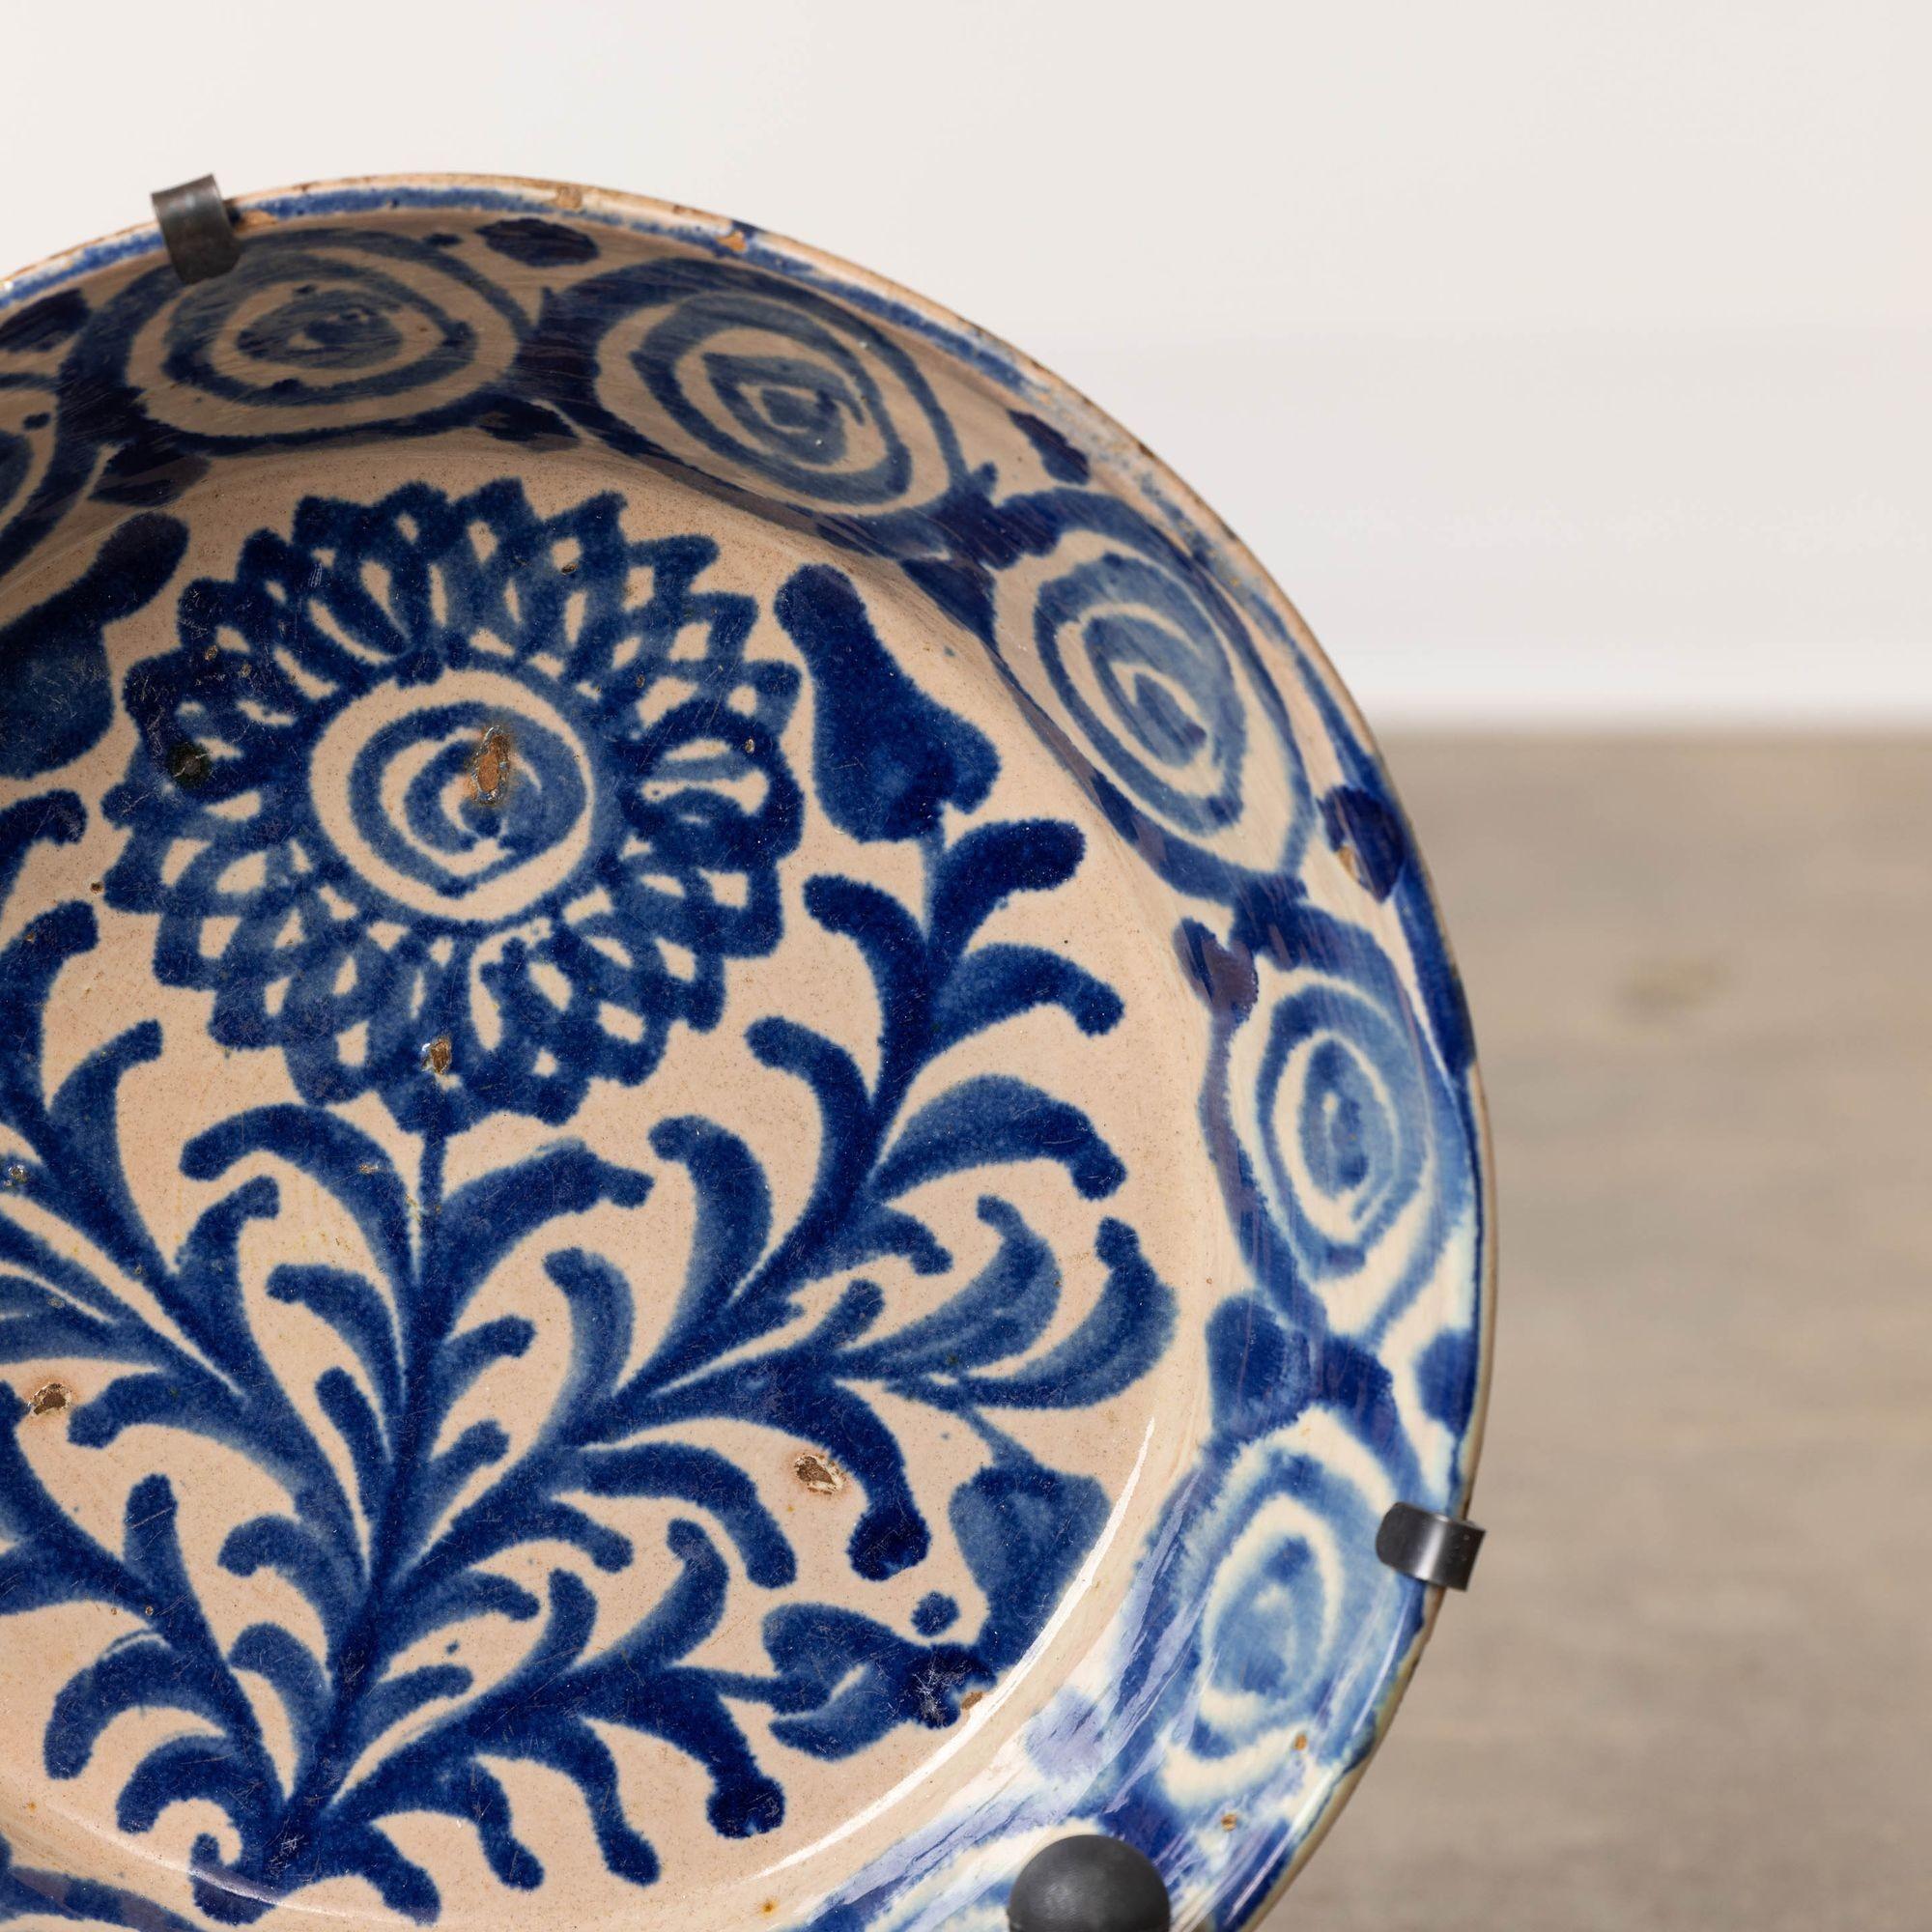 19th c. Spanish Blue and White Fajalauza Lebrillo Bowl from Granada In Excellent Condition For Sale In Wichita, KS